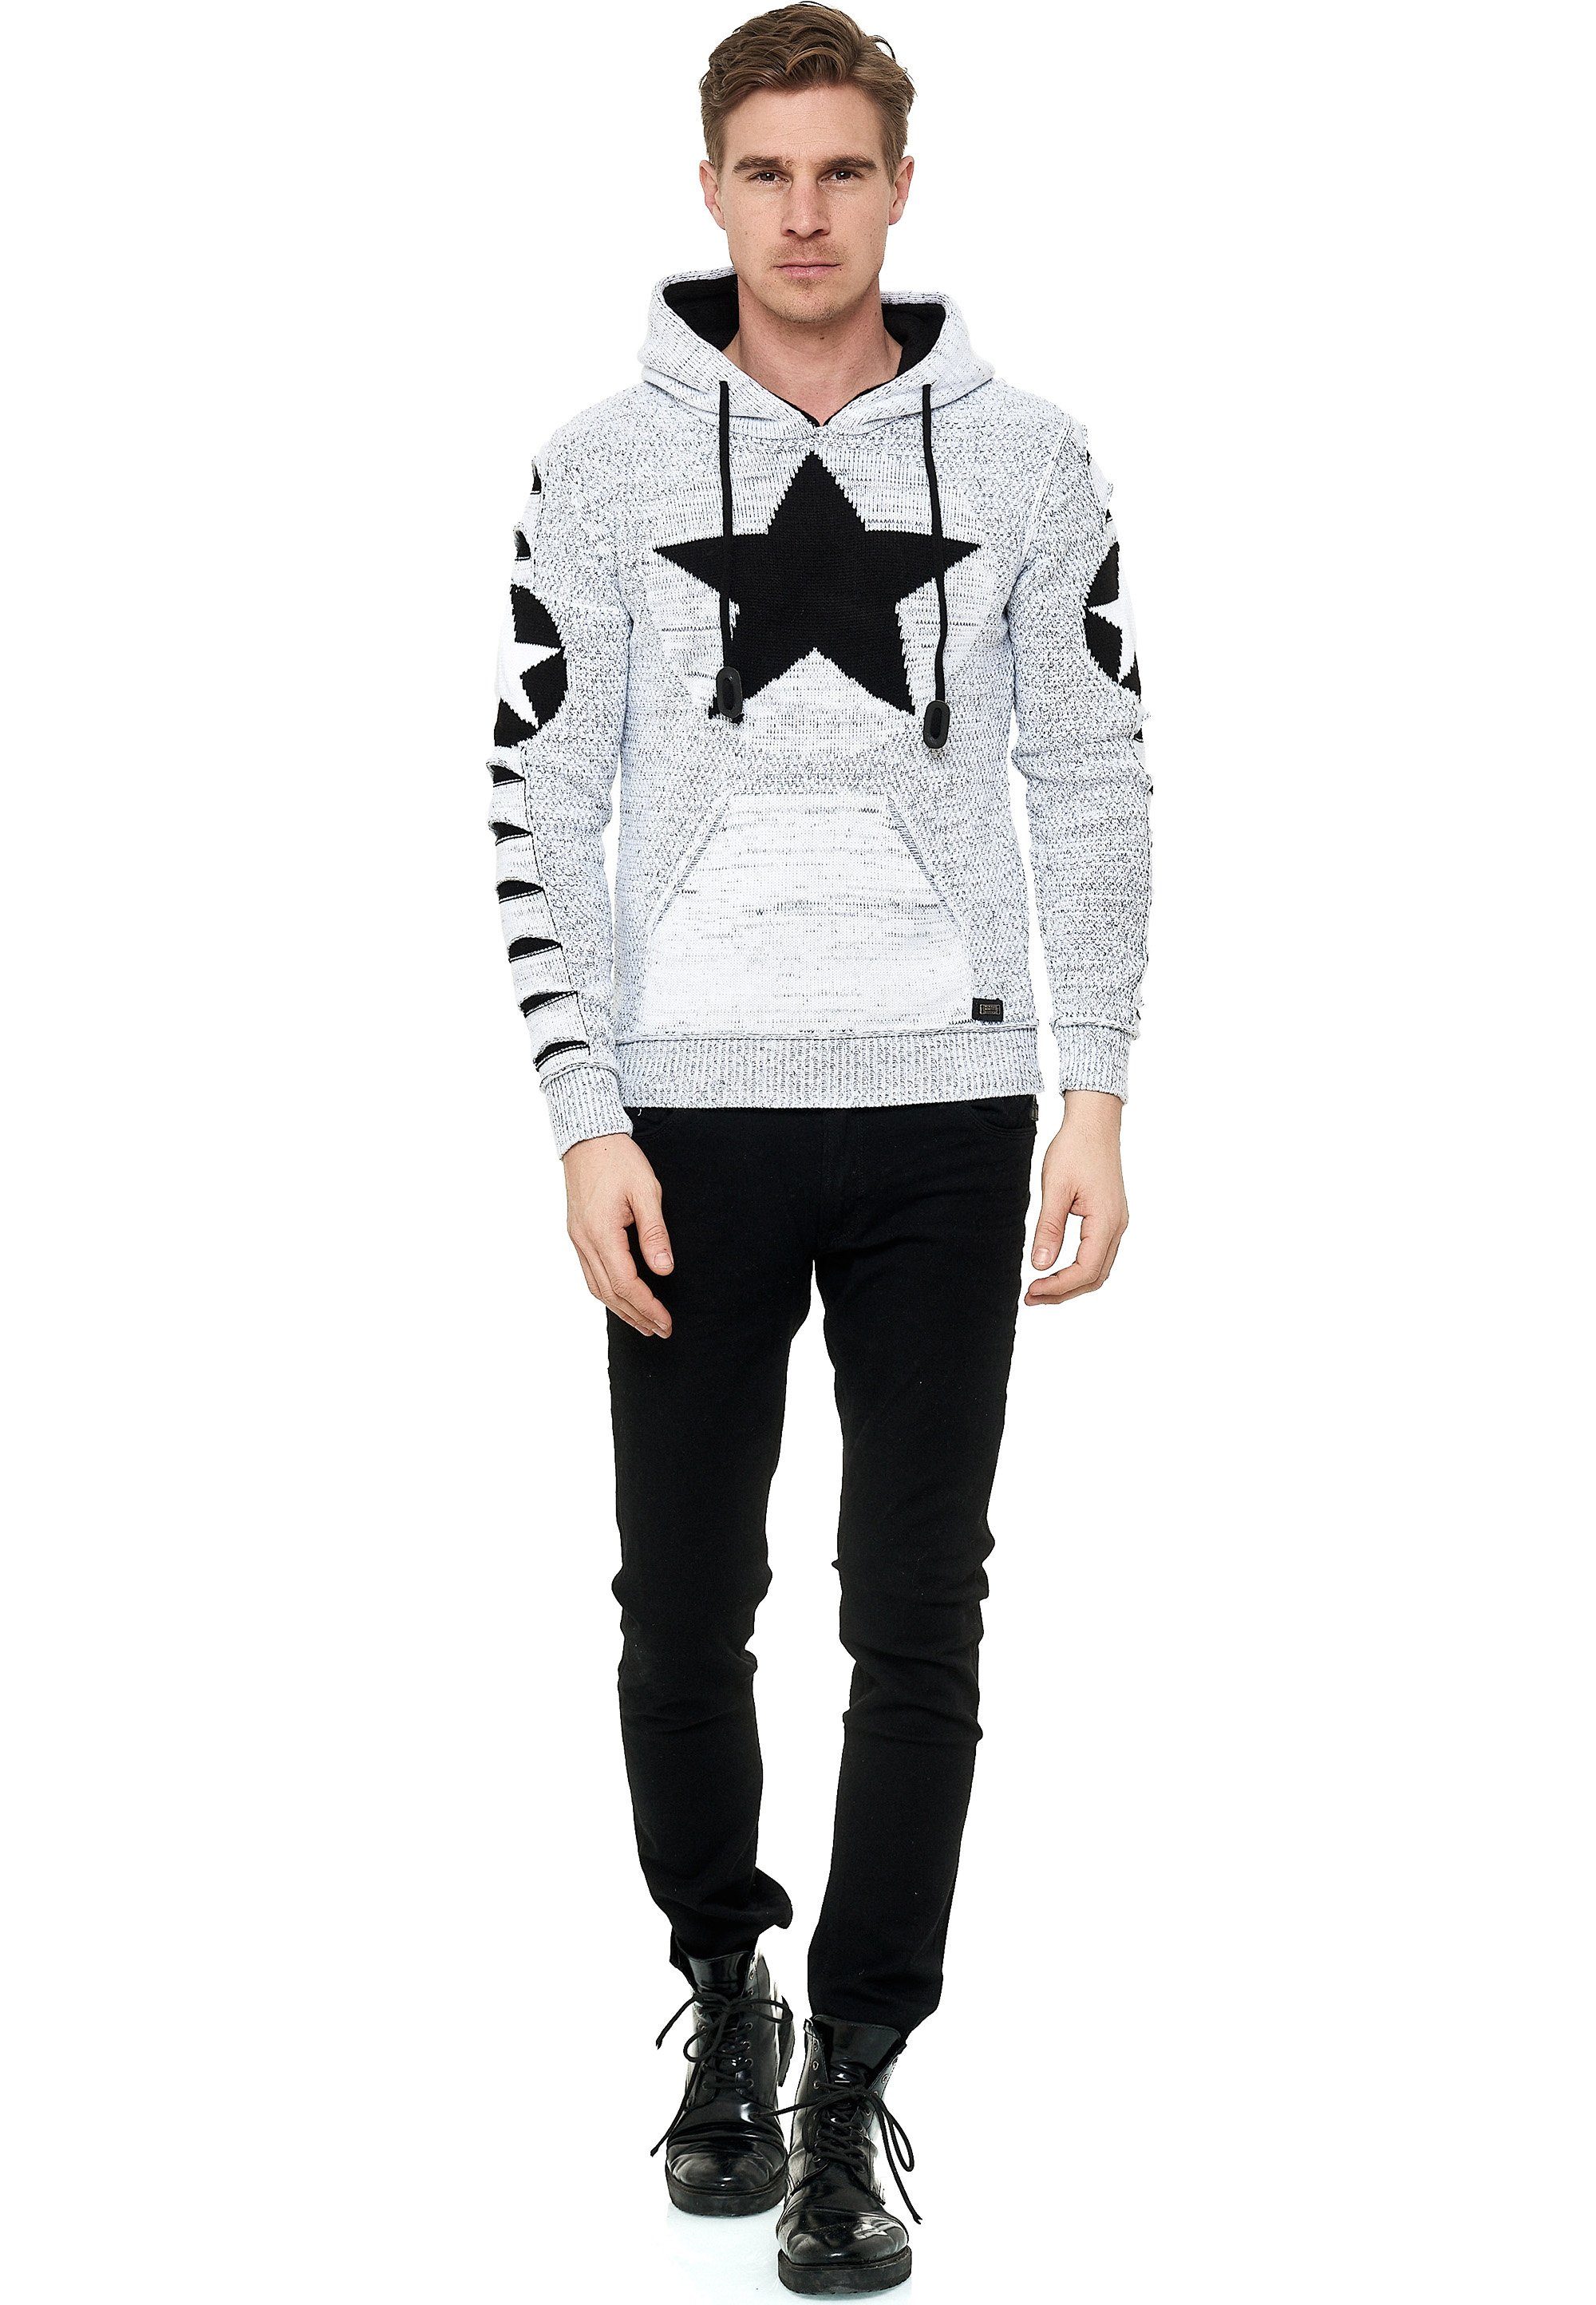 weiß-schwarz großem Rusty Kapuzensweatshirt Neal mit Stern-Design